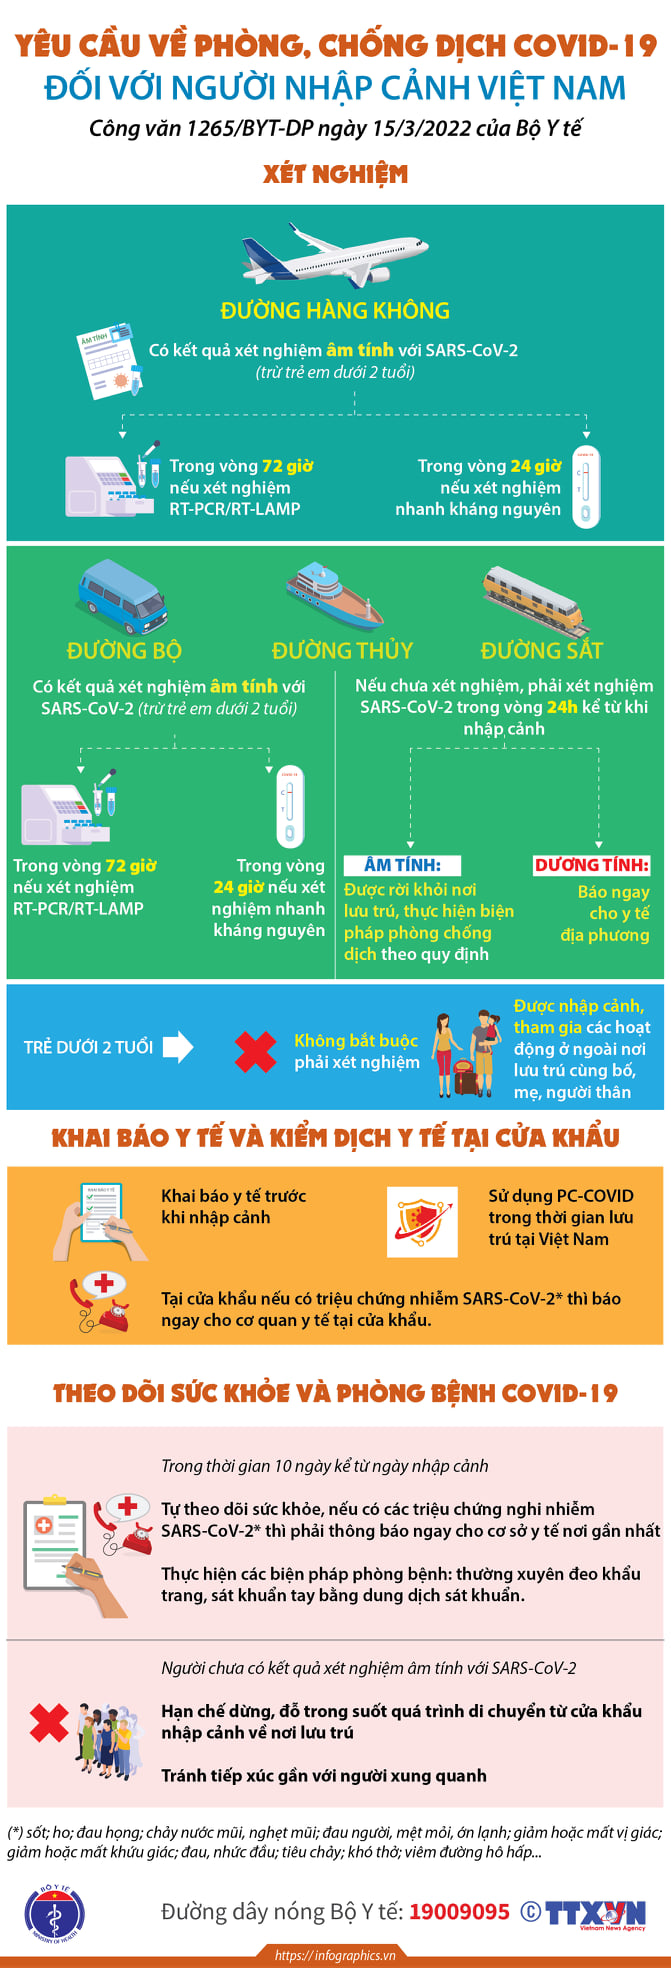 Infographic hướng dẫn phòng, chống dịch COVID-19 với người nhập cảnh